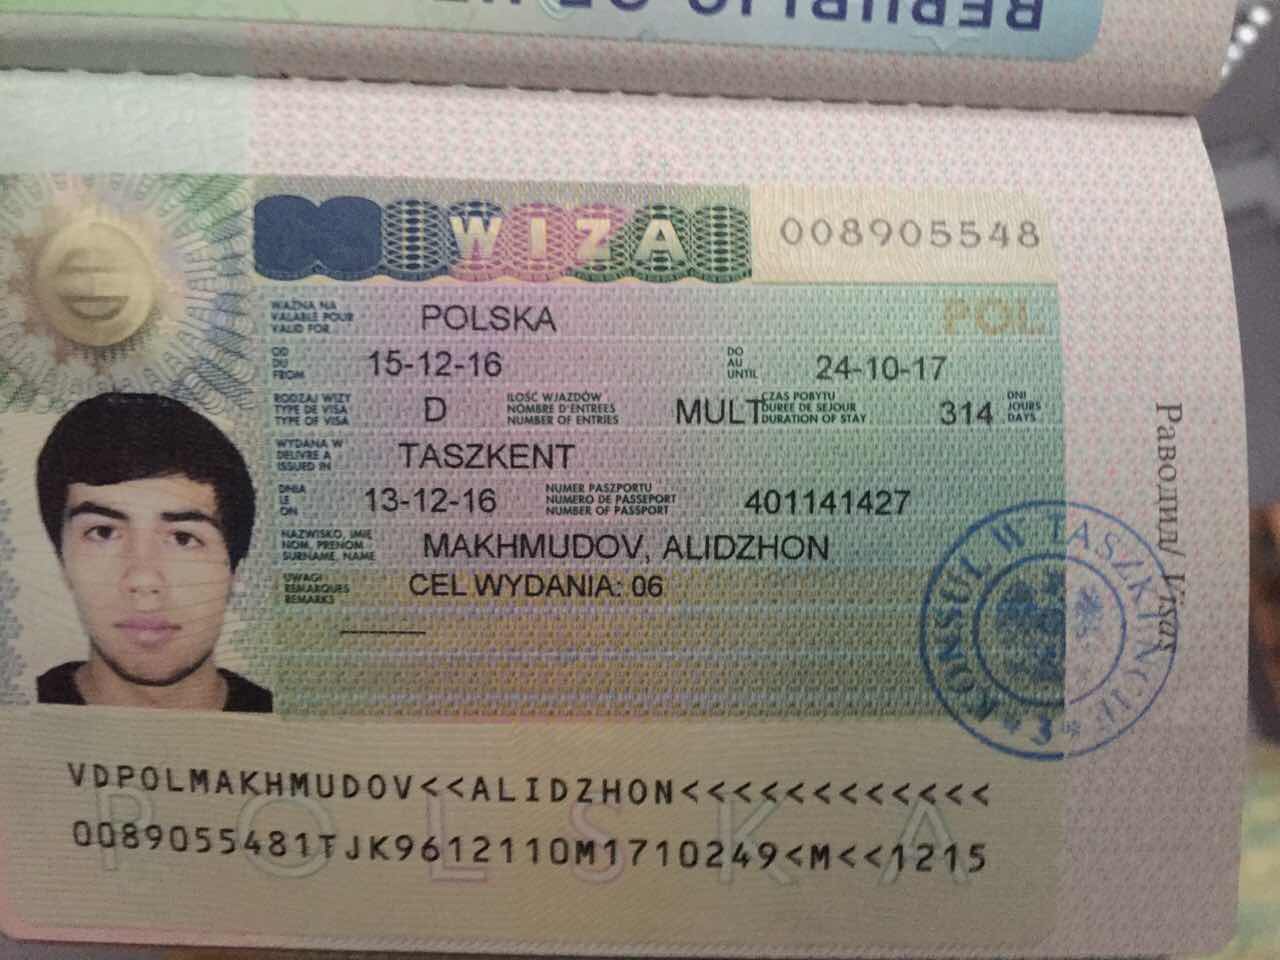 Получить визу в армении. Виза для киргизов. Одноразовая шенгенская виза. Шенгенская виза для граждан Узбекистана.